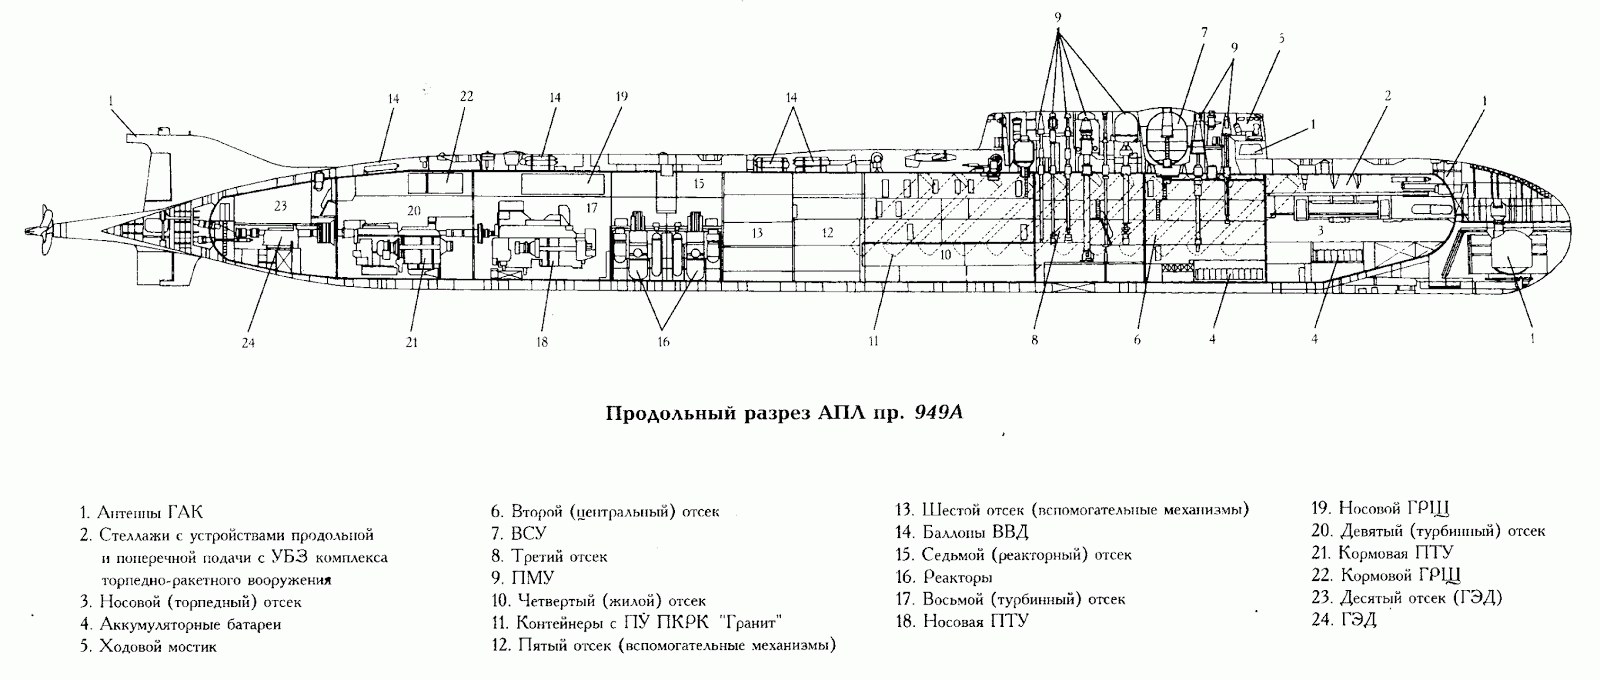 К-141 «курск» - история создания и гибели атомной подводной лодки курск